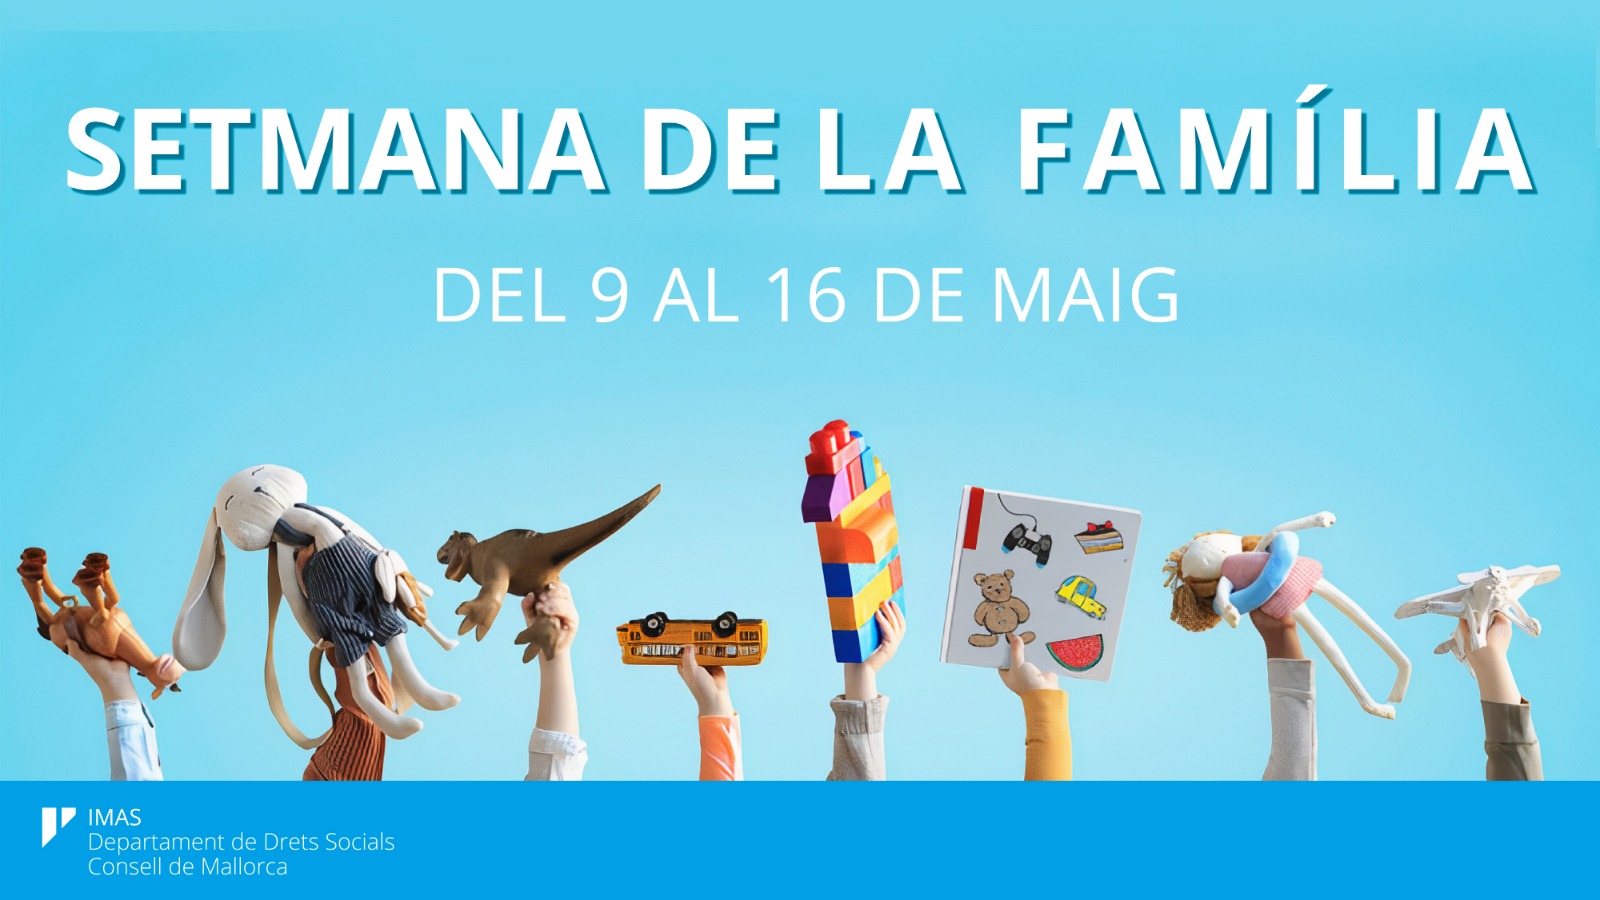 L’IMAS inicia la Setmana de la Família amb el lema «La família, entorn segur»  